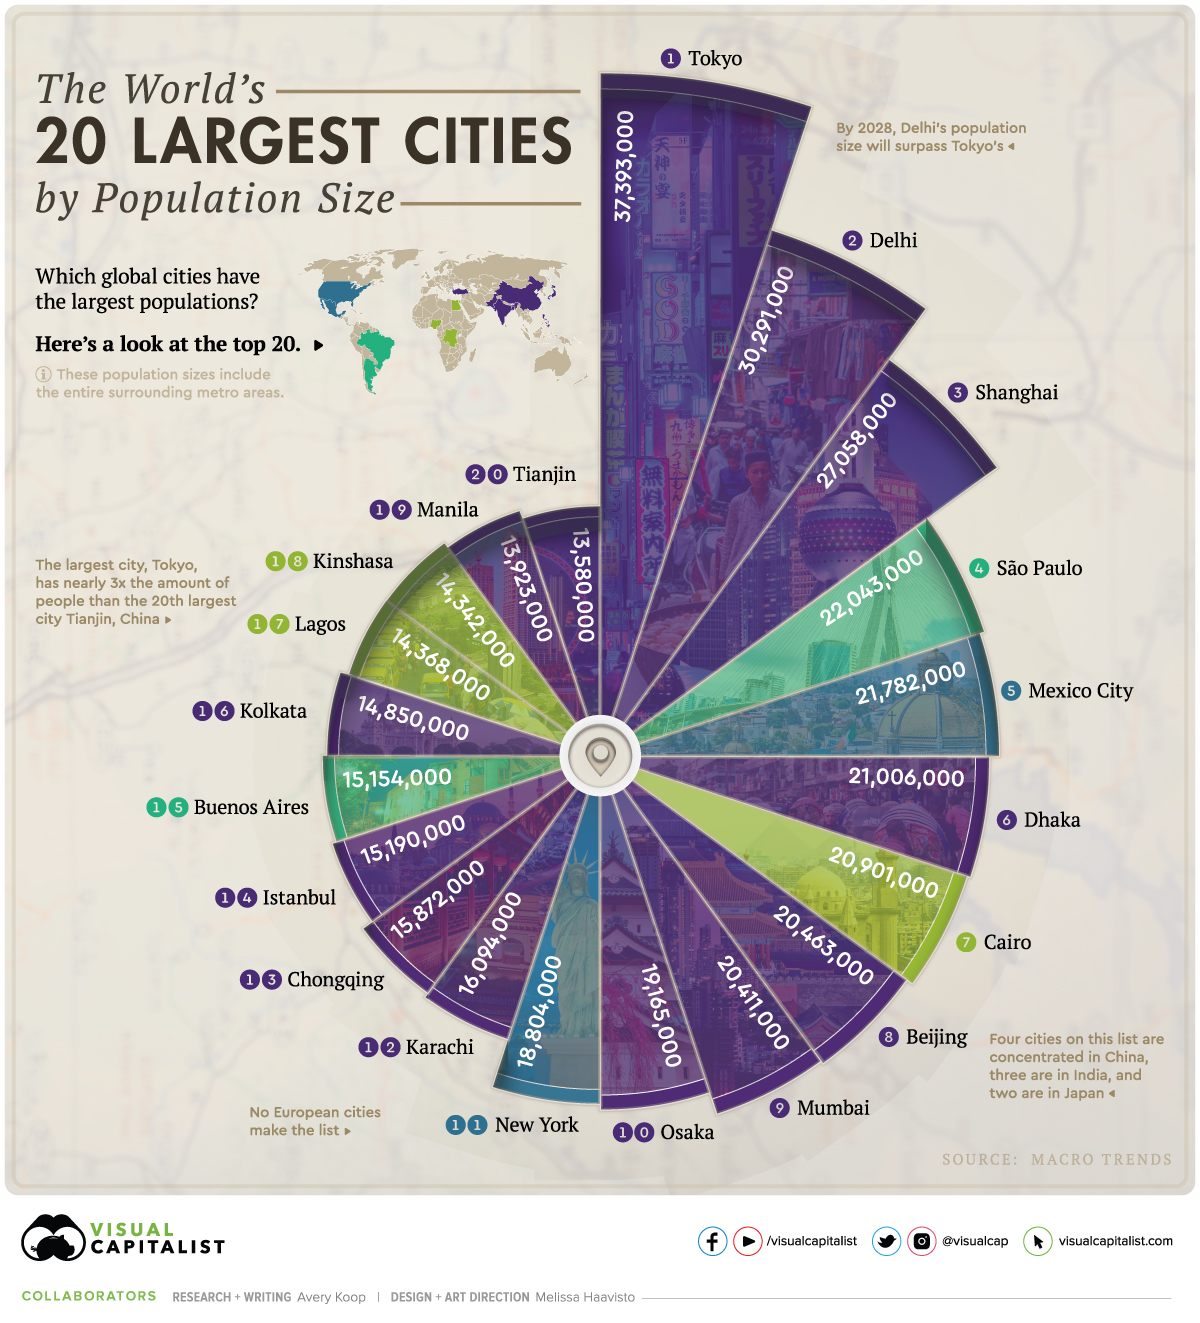 Una visualización detallada de las ciudades más grandes del mundo.